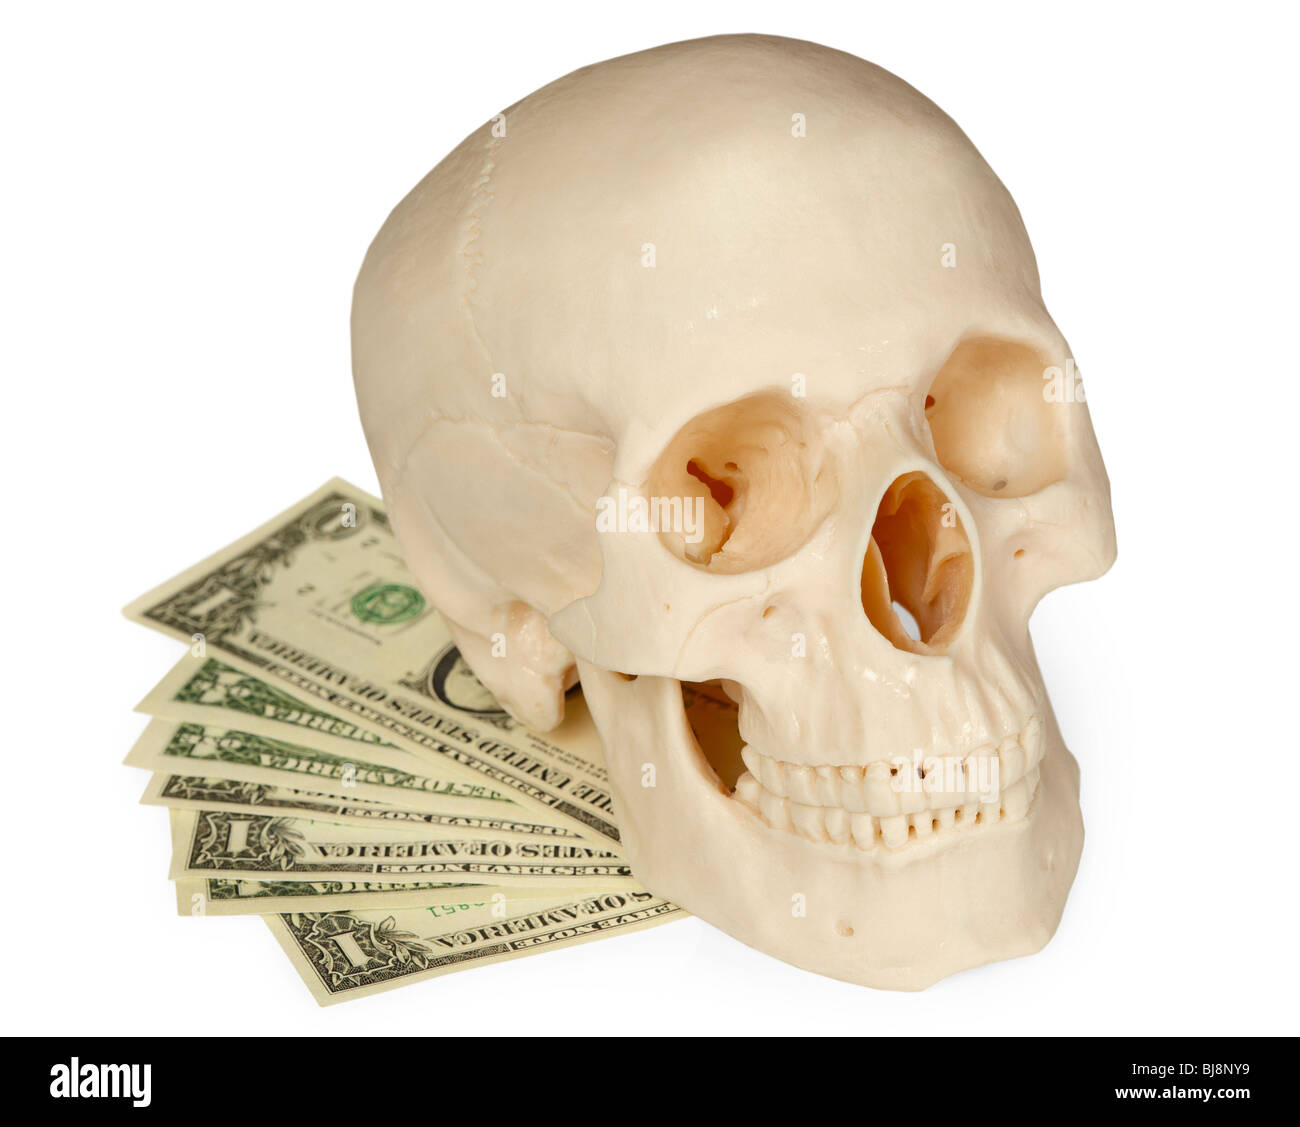 El cráneo humano tumbado sobre un paquete de dinero aislado sobre un fondo blanco. Foto de stock